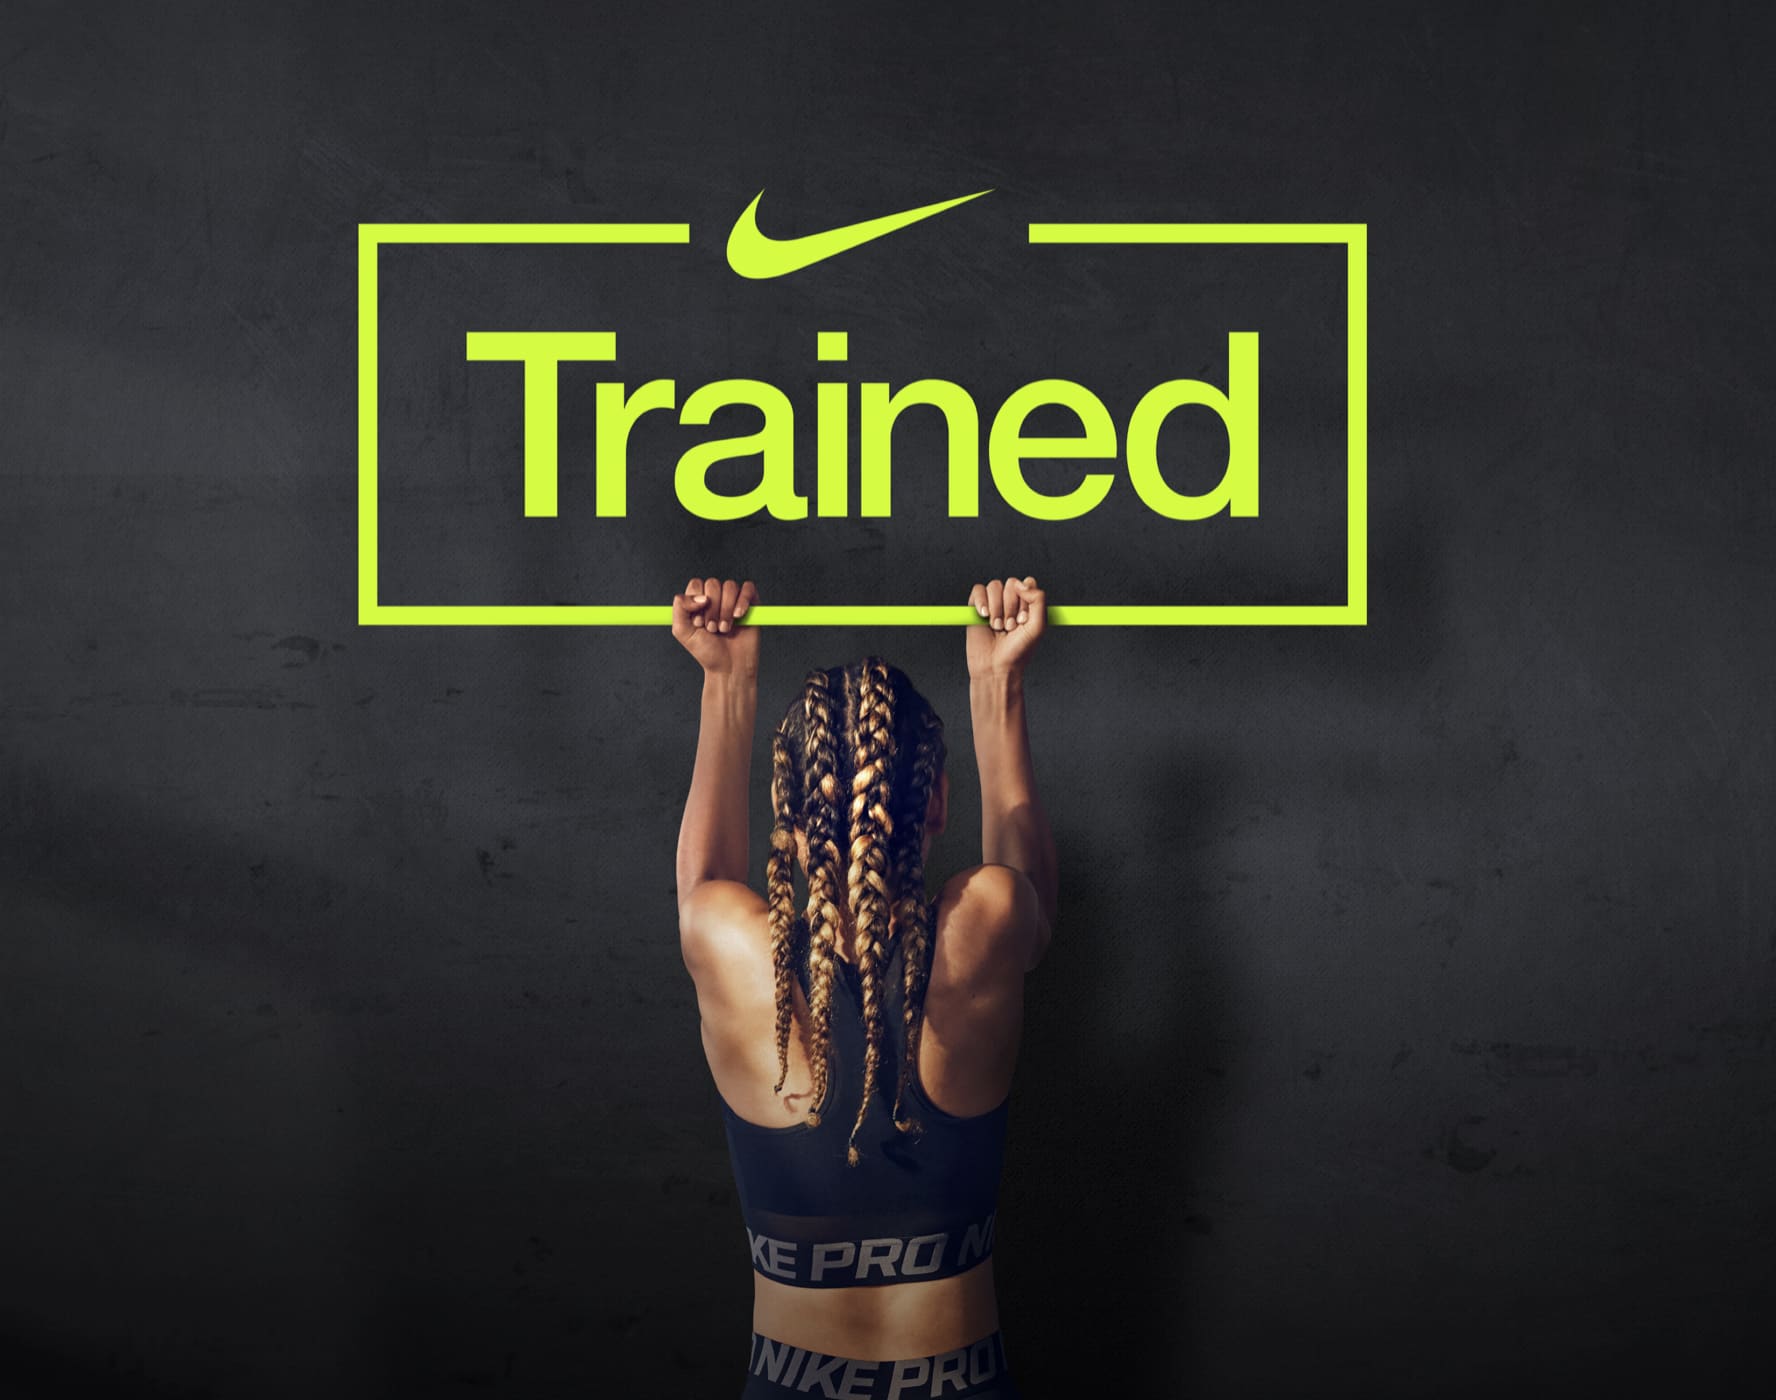 estoy de acuerdo recibir hambruna Nike Training Club App. Entrenamientos en casa y mucho más. Nike AR